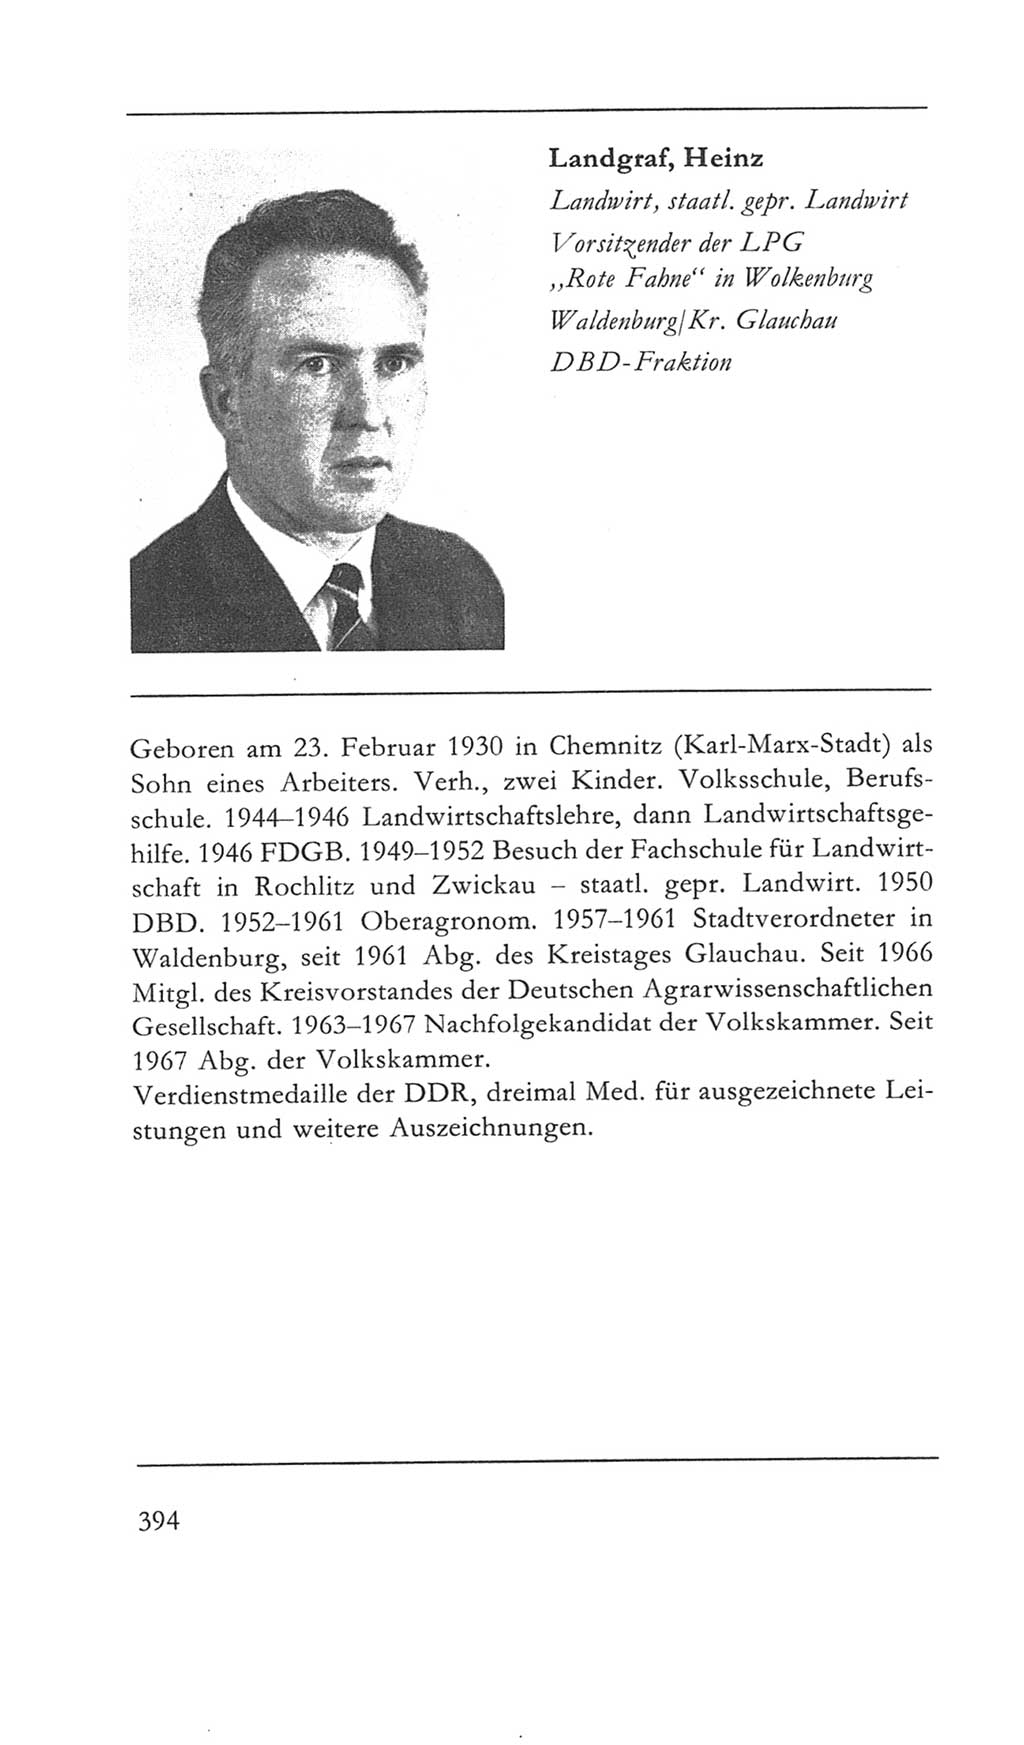 Volkskammer (VK) der Deutschen Demokratischen Republik (DDR) 5. Wahlperiode 1967-1971, Seite 394 (VK. DDR 5. WP. 1967-1971, S. 394)